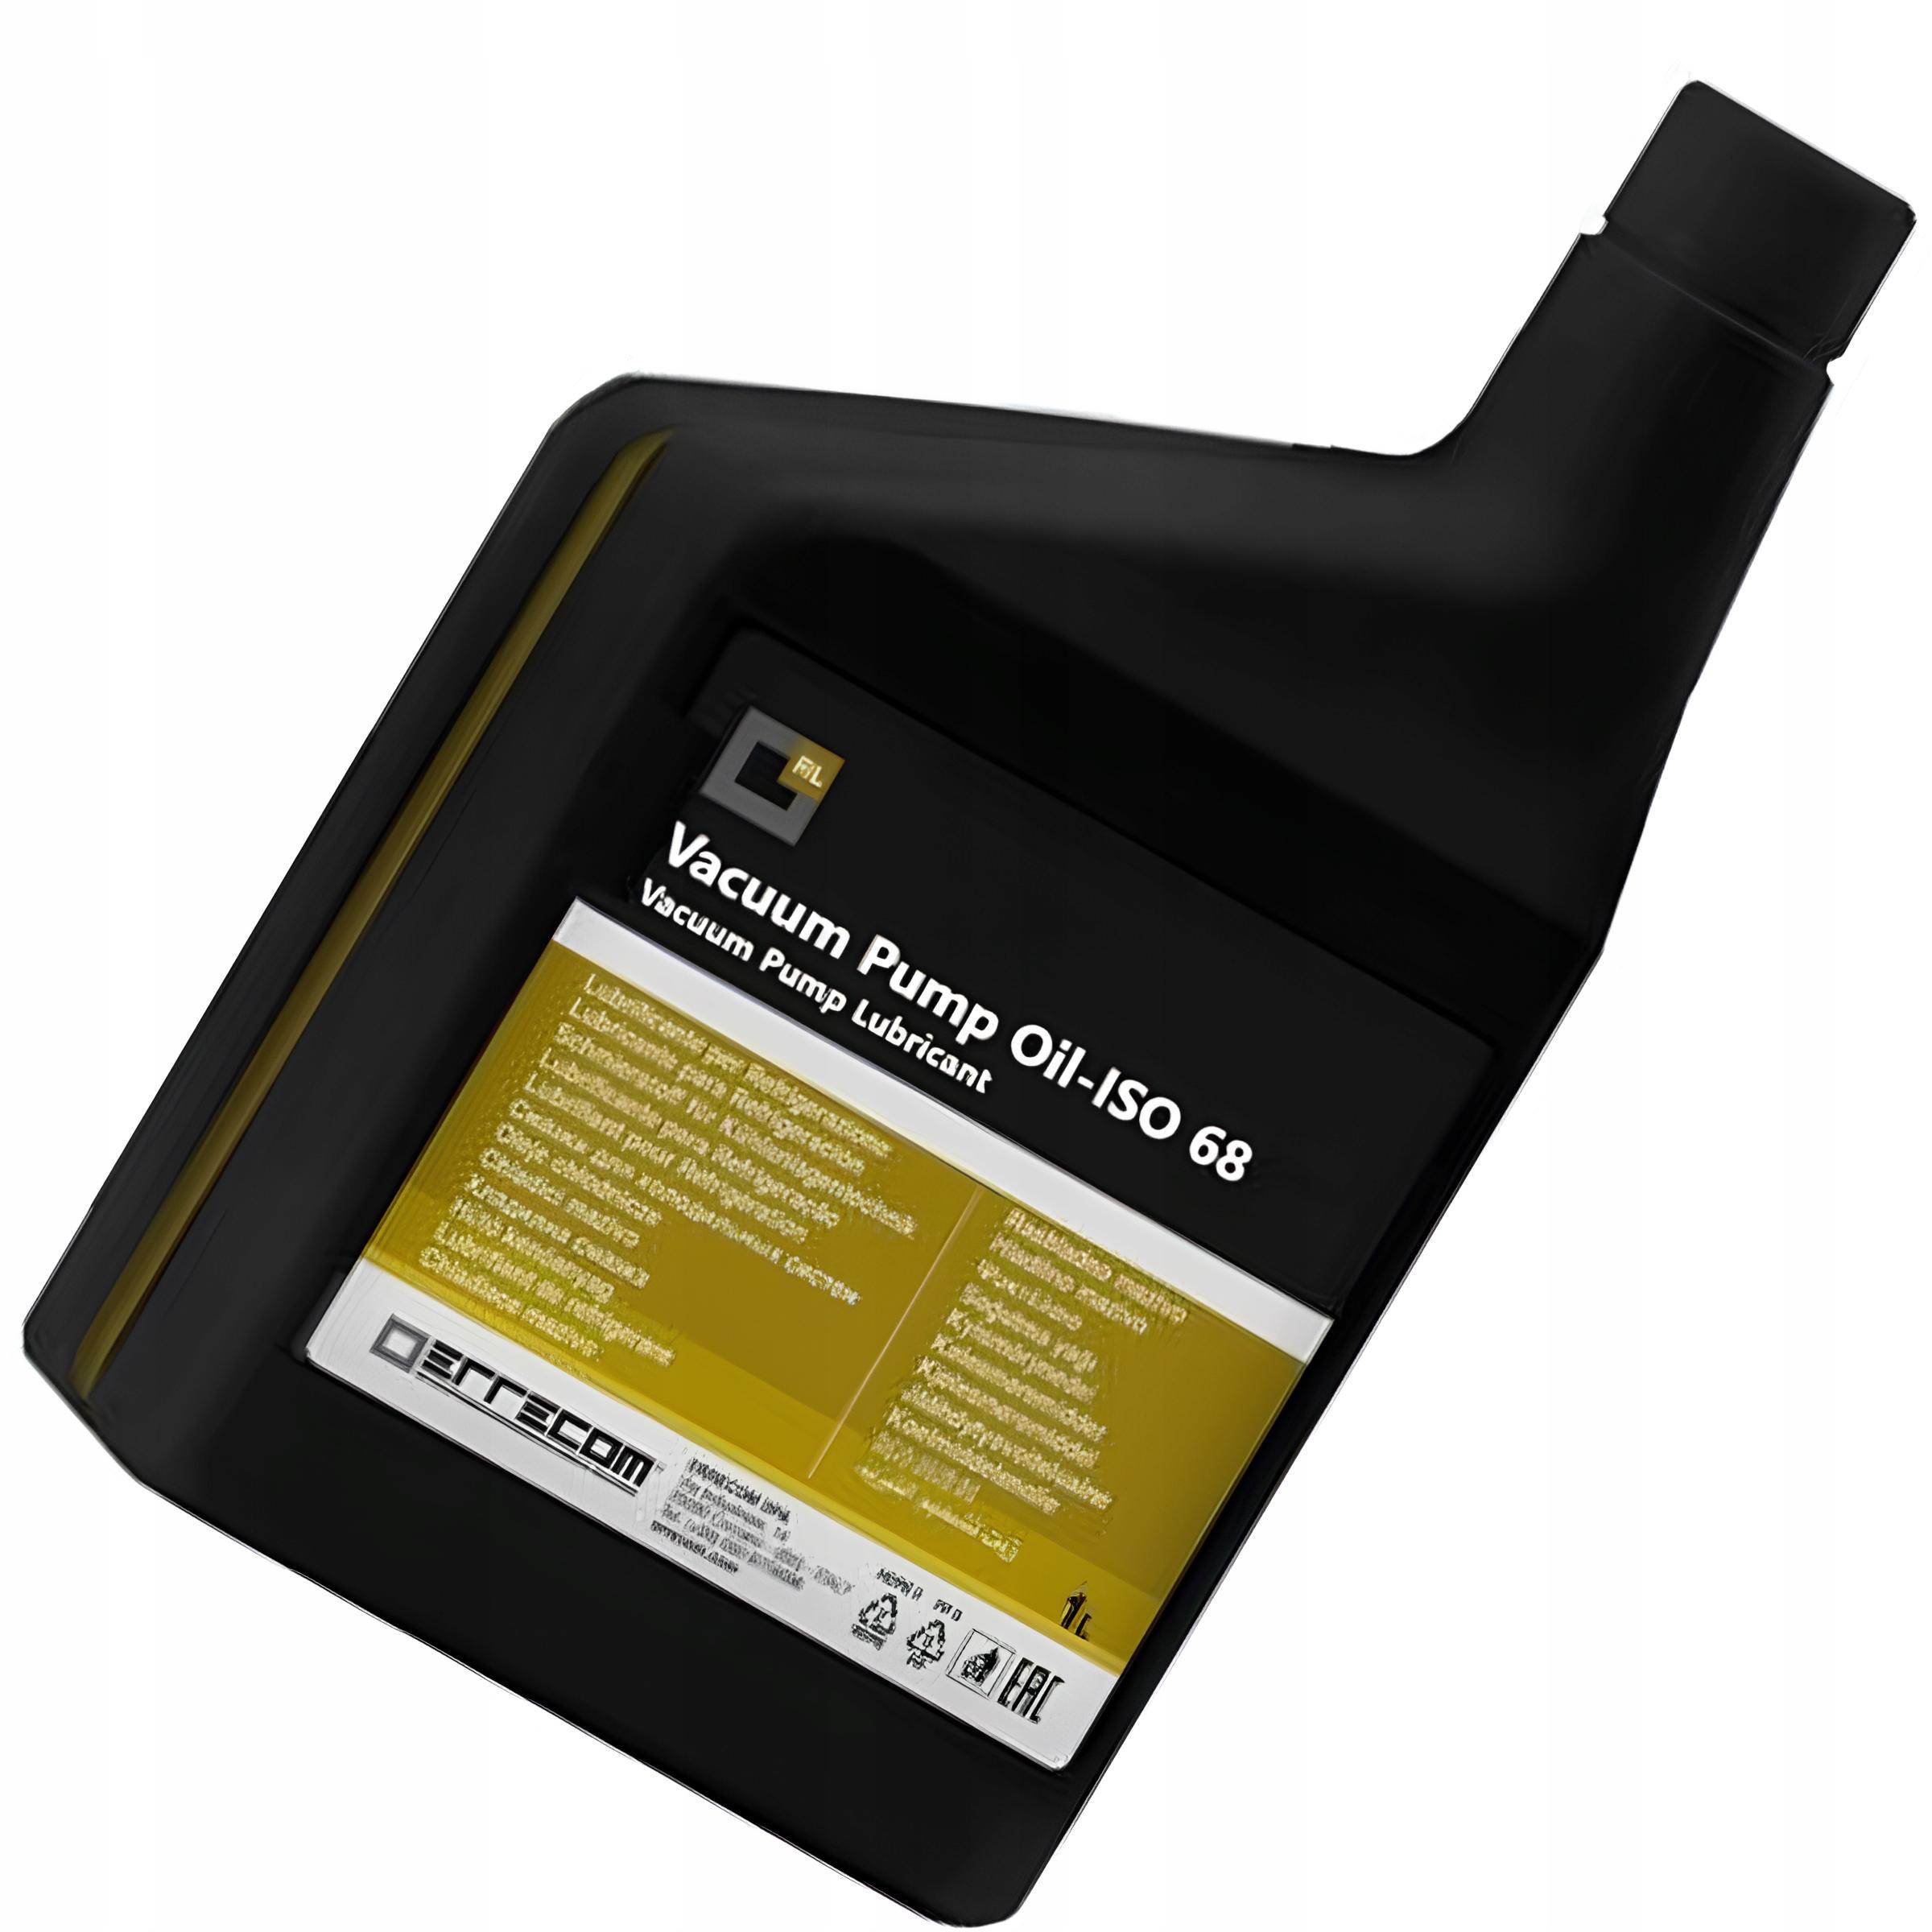 Vacuum Pump Oil ISO68 ERRECOM 1 litr - uniwersalny olej do konserwacji pomp próżniowych